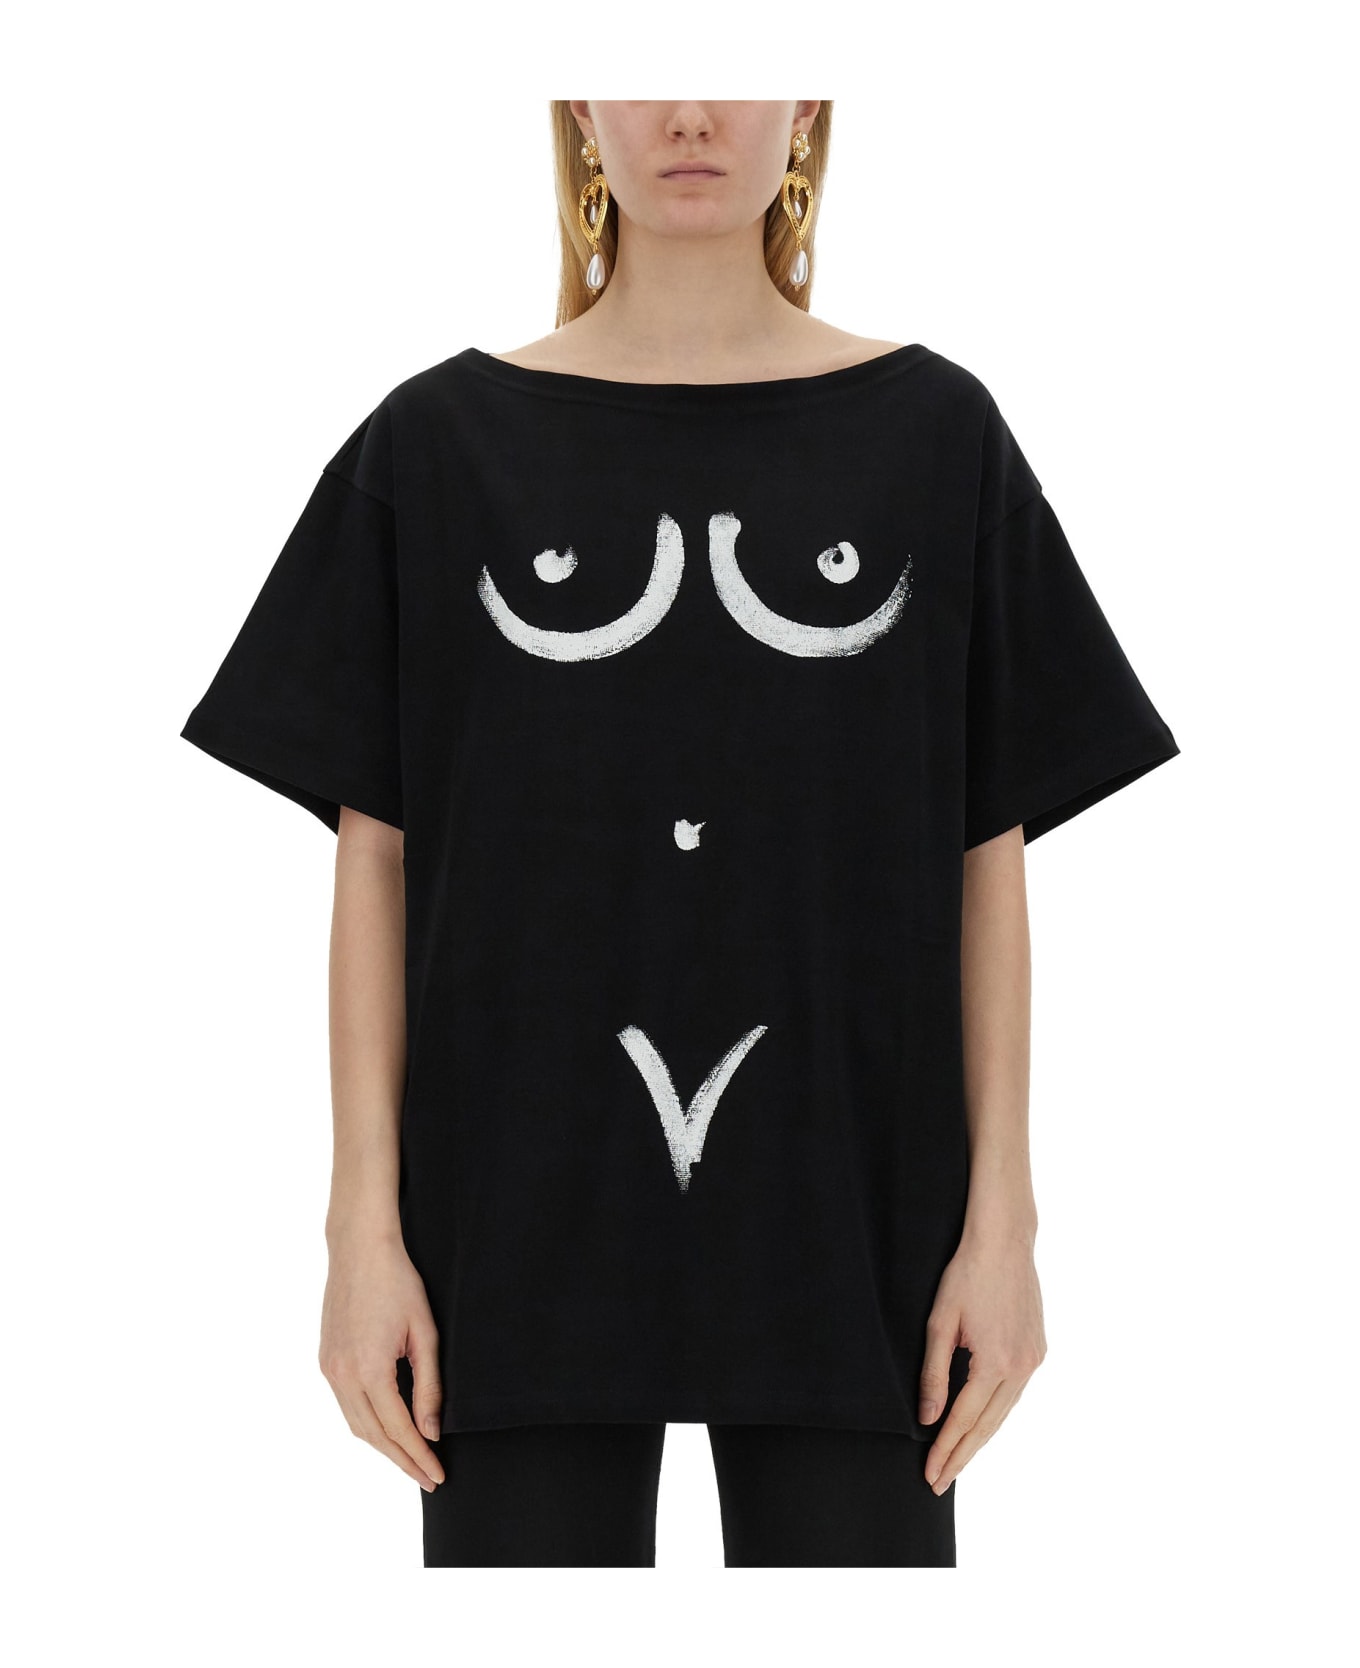 Moschino Interlock Body Print T-shirt - Black